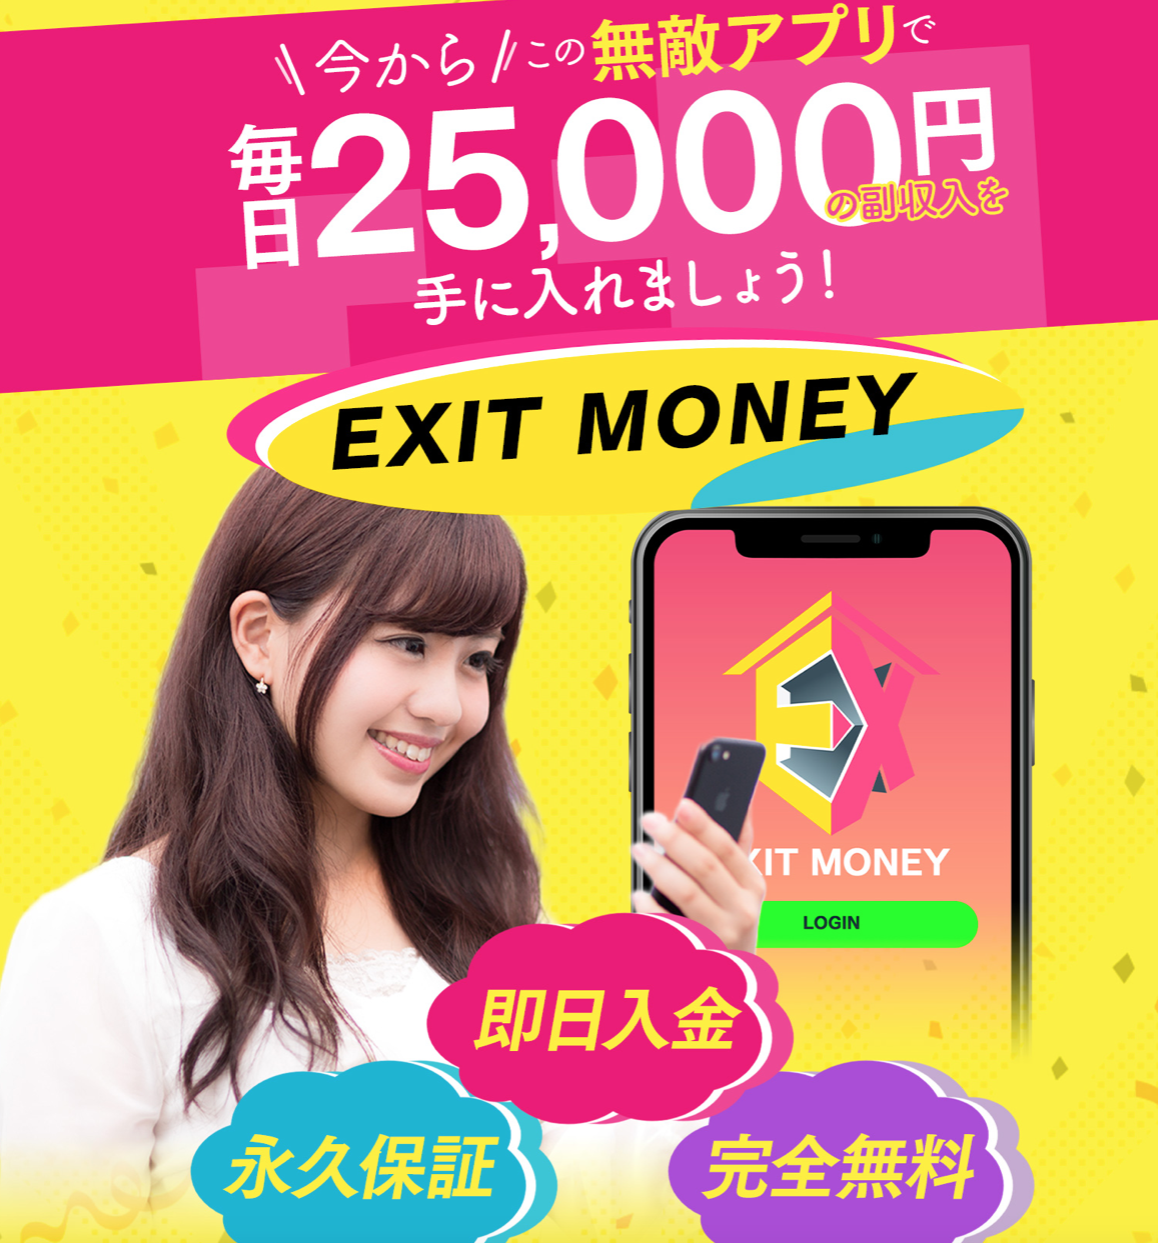 EXIT MONEY (イグジットマネー)，福田美里(ふくだみさと)